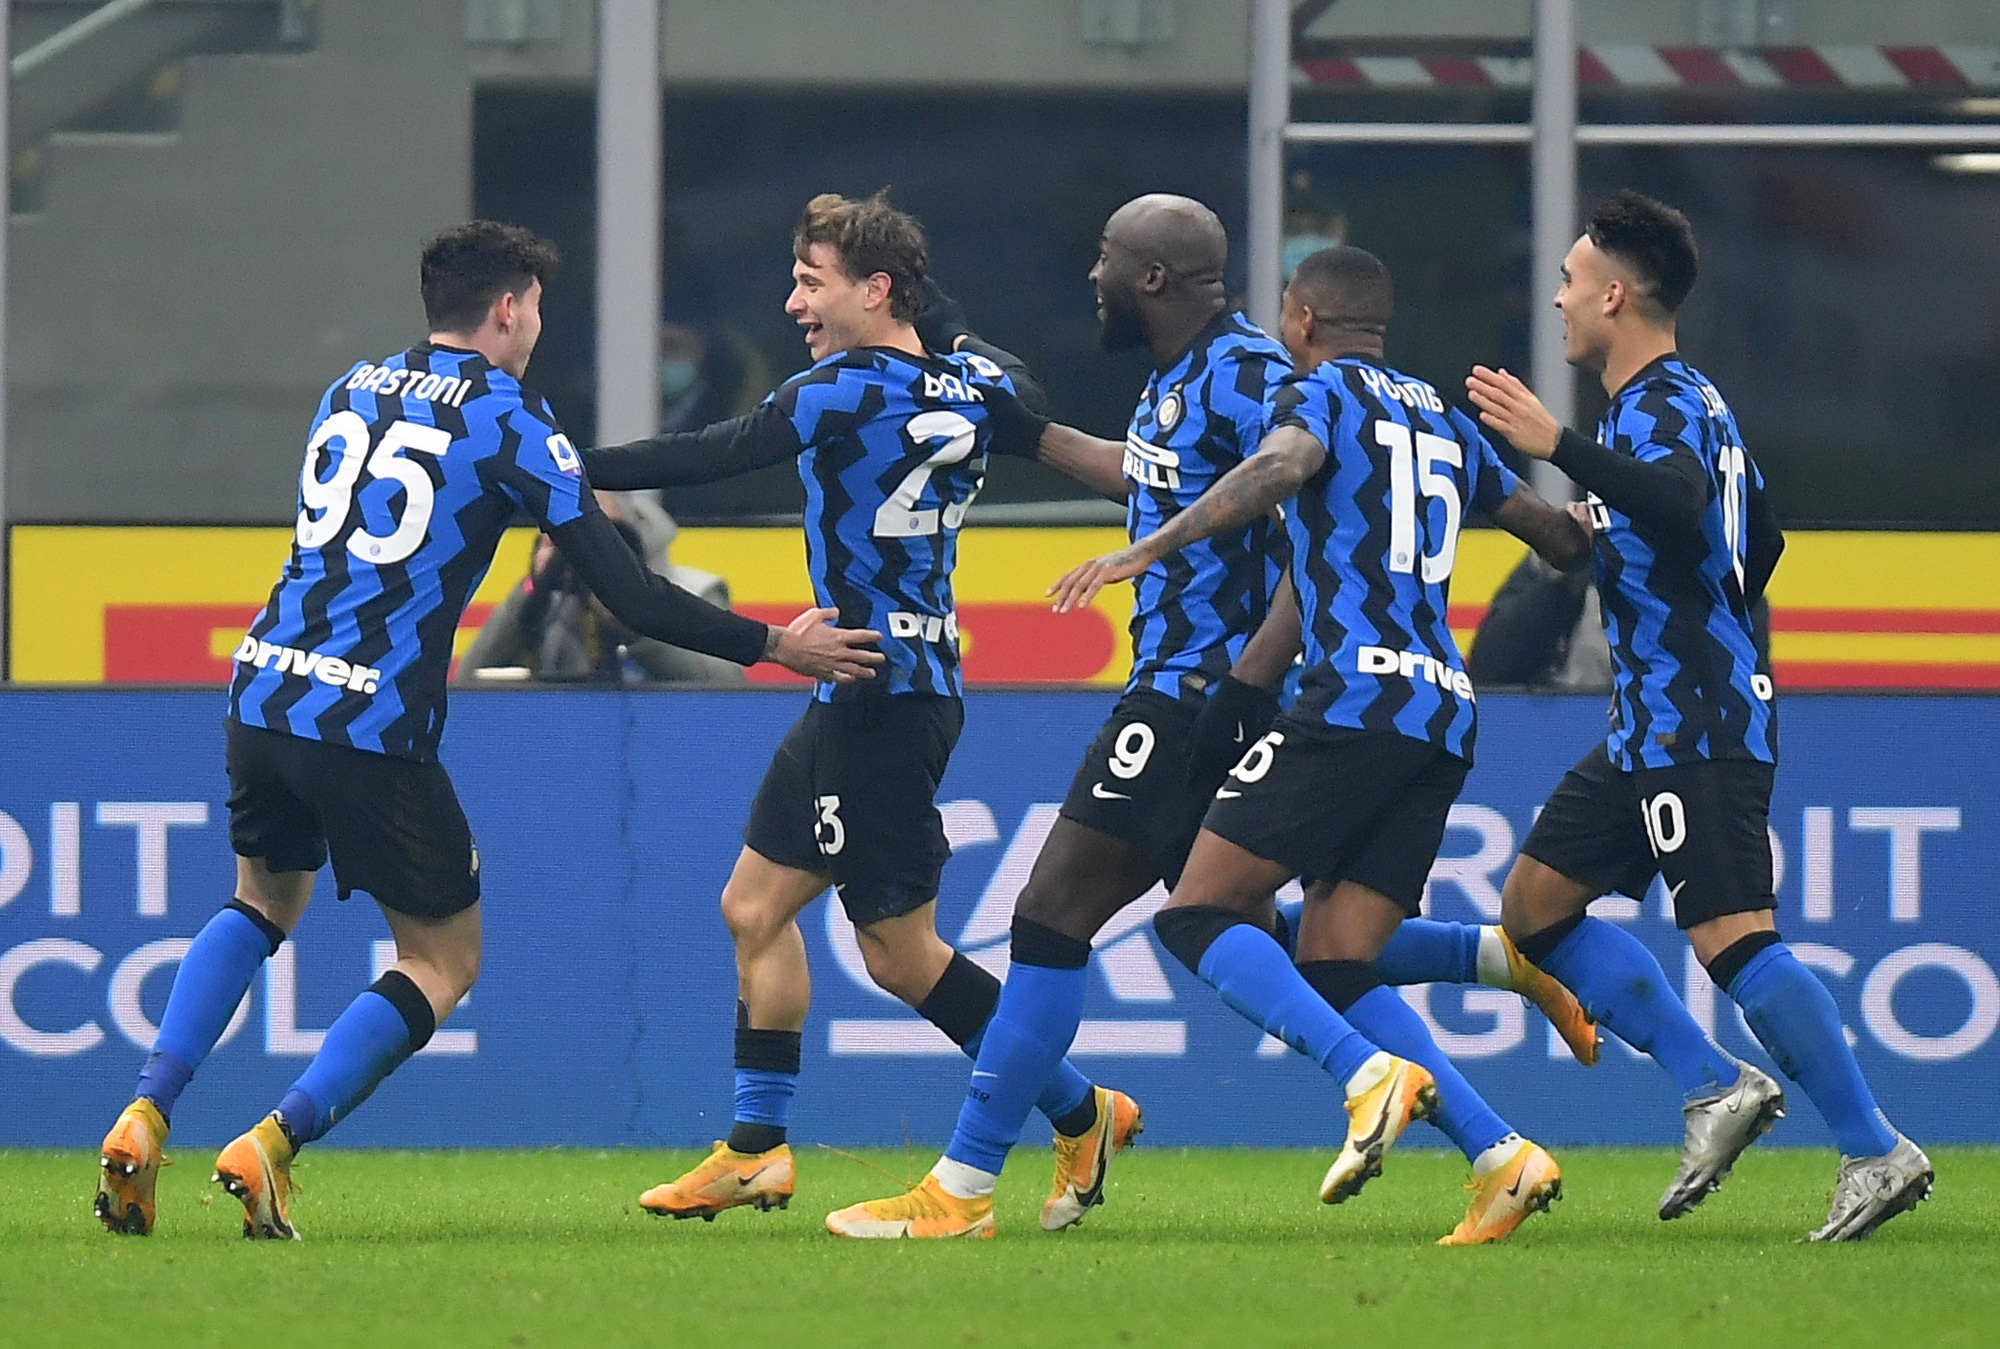 Đội hình của Inter Milan hiện tại đủ sức đánh bại mọi đối thủ